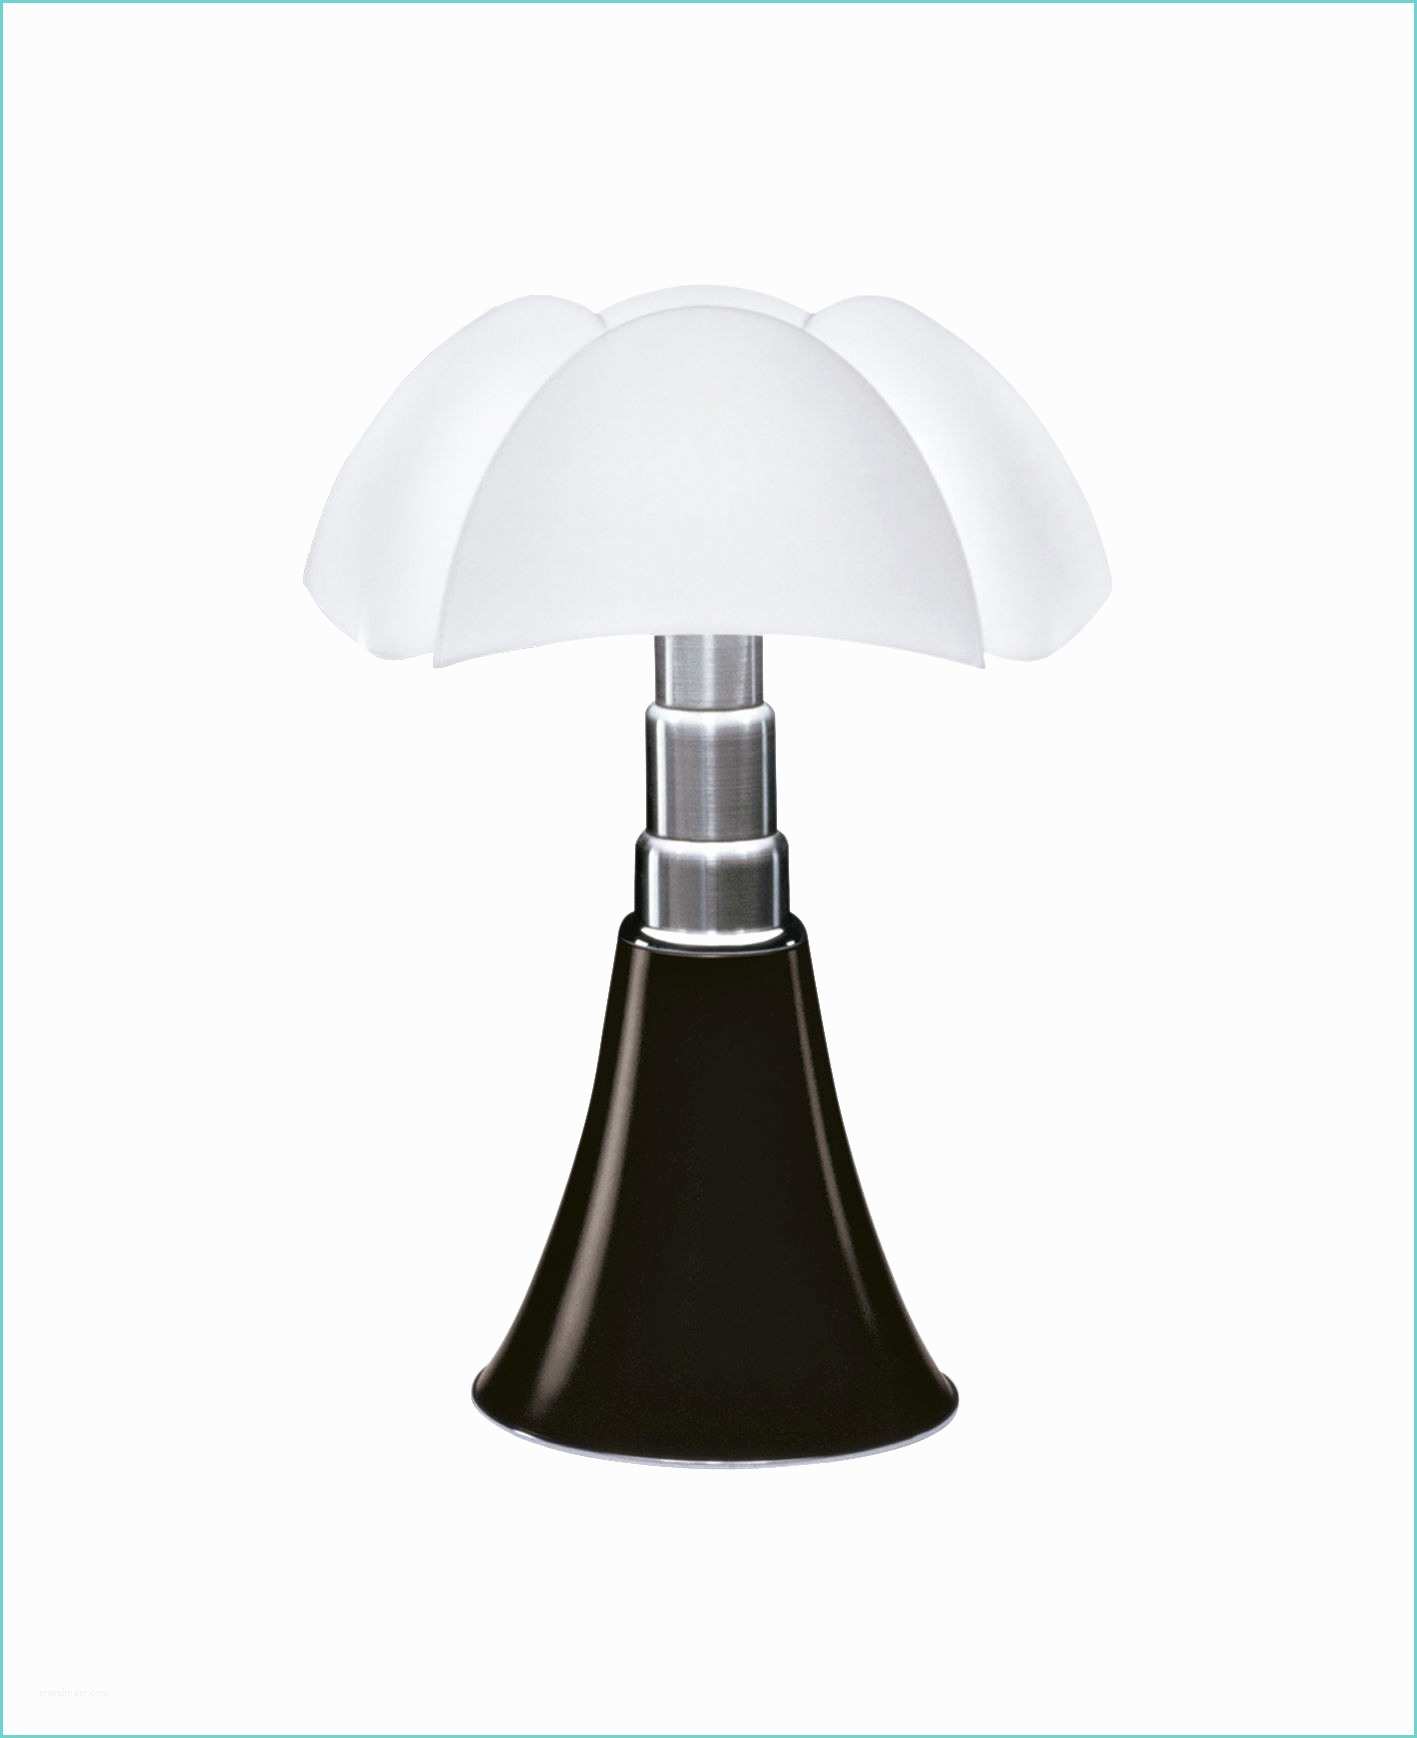 Lampe De Chevet Design Led Lampe De Table Minipipistrello Led H 35 Cm Marron Foncé